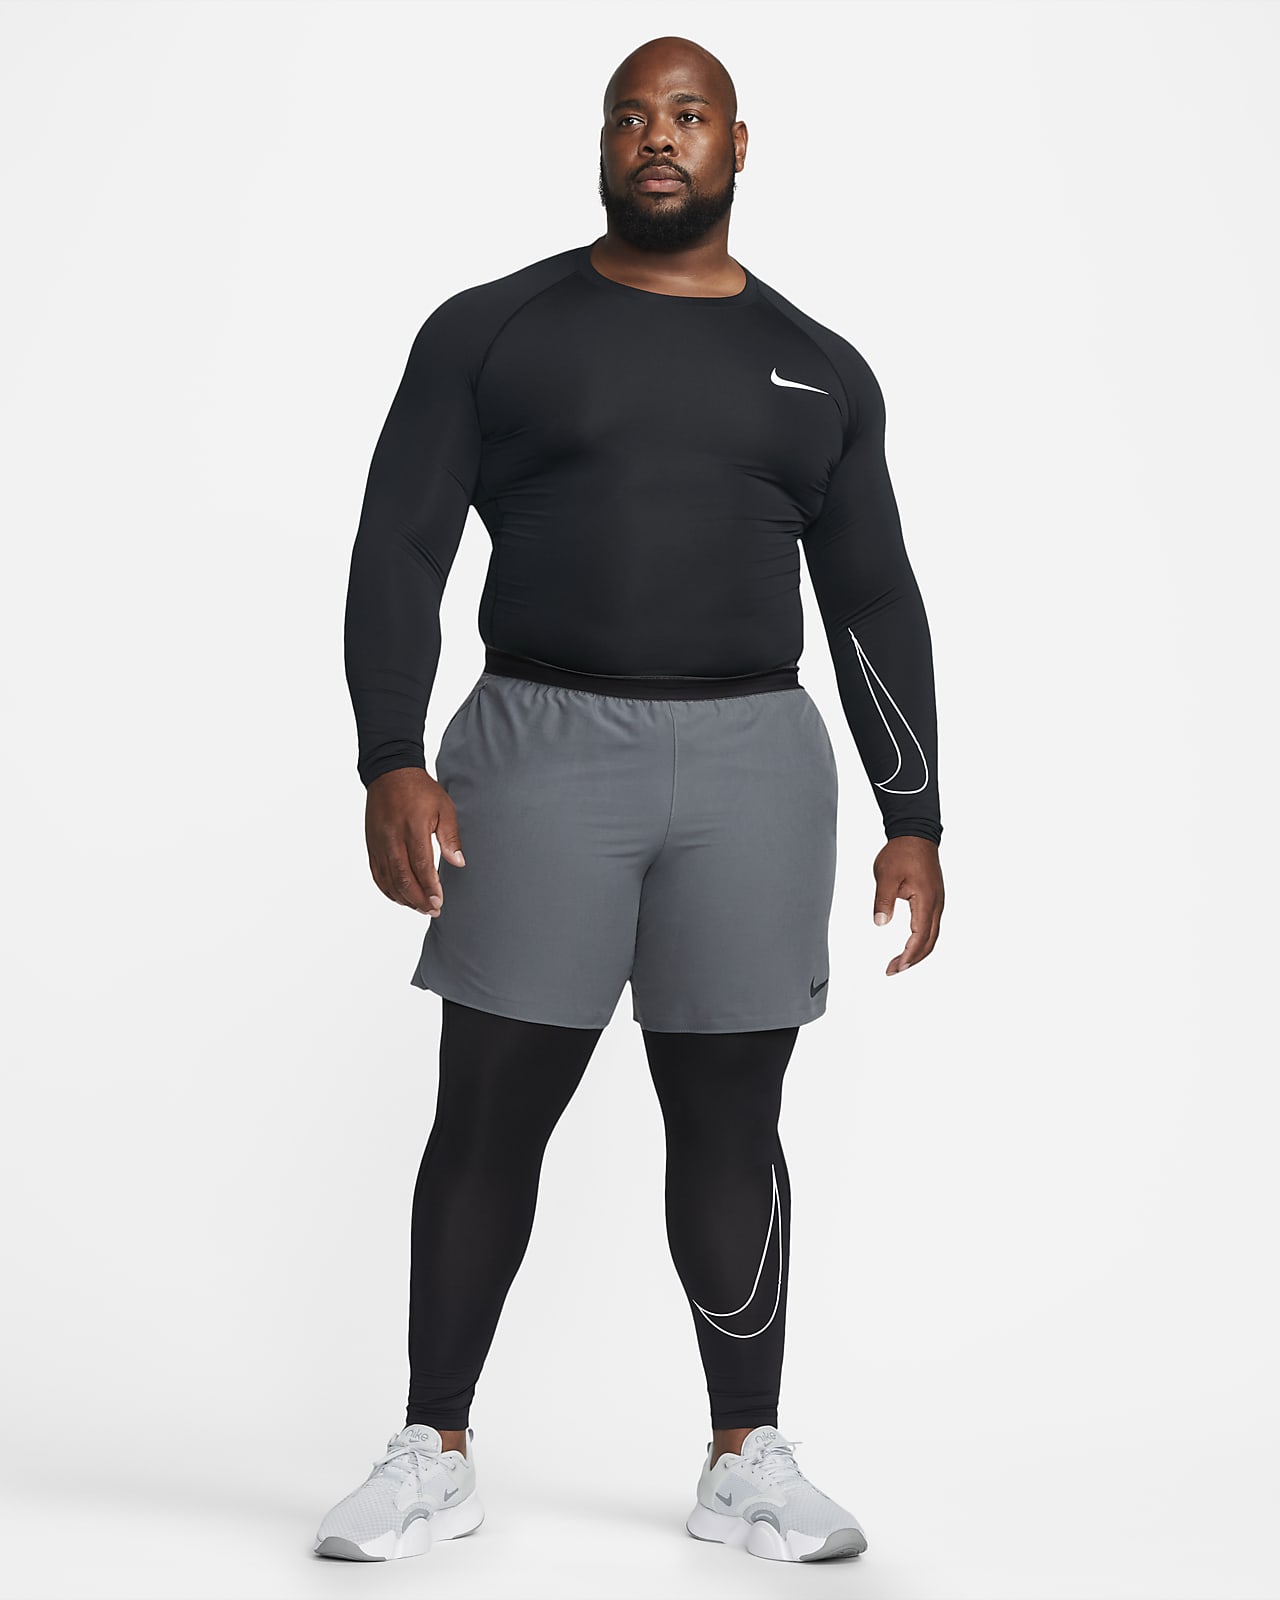 Nike Pro Men's Dri-FIT Tight Sleeveless Fitness Top. Nike AU